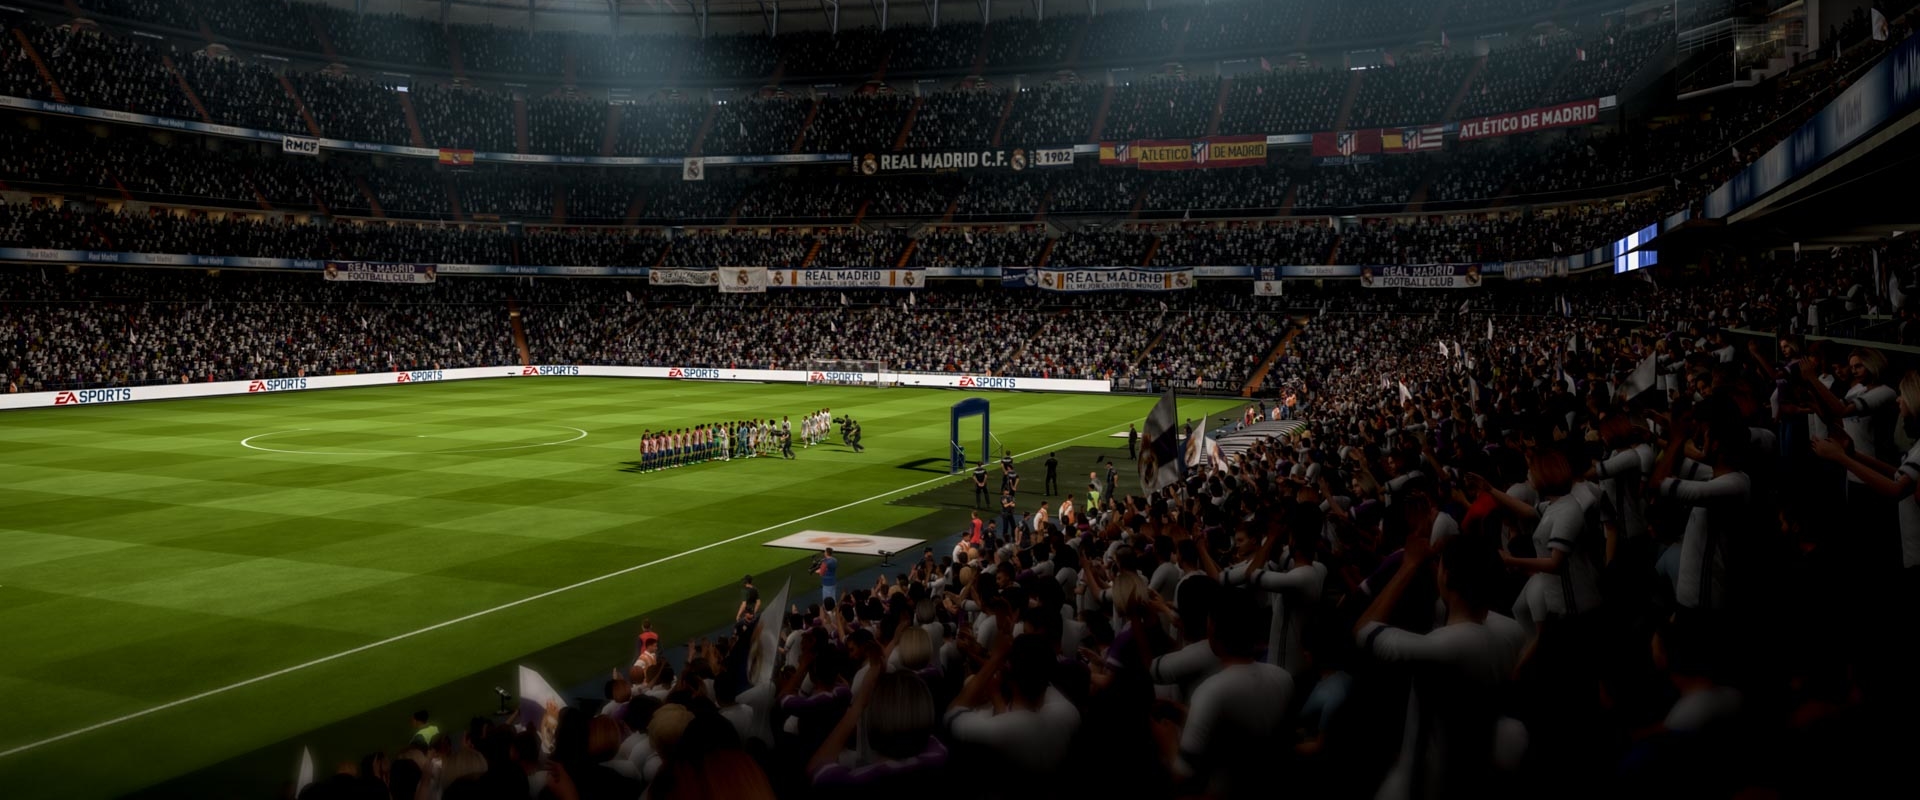 FIFA 19: Új kameraszög is lesz benne